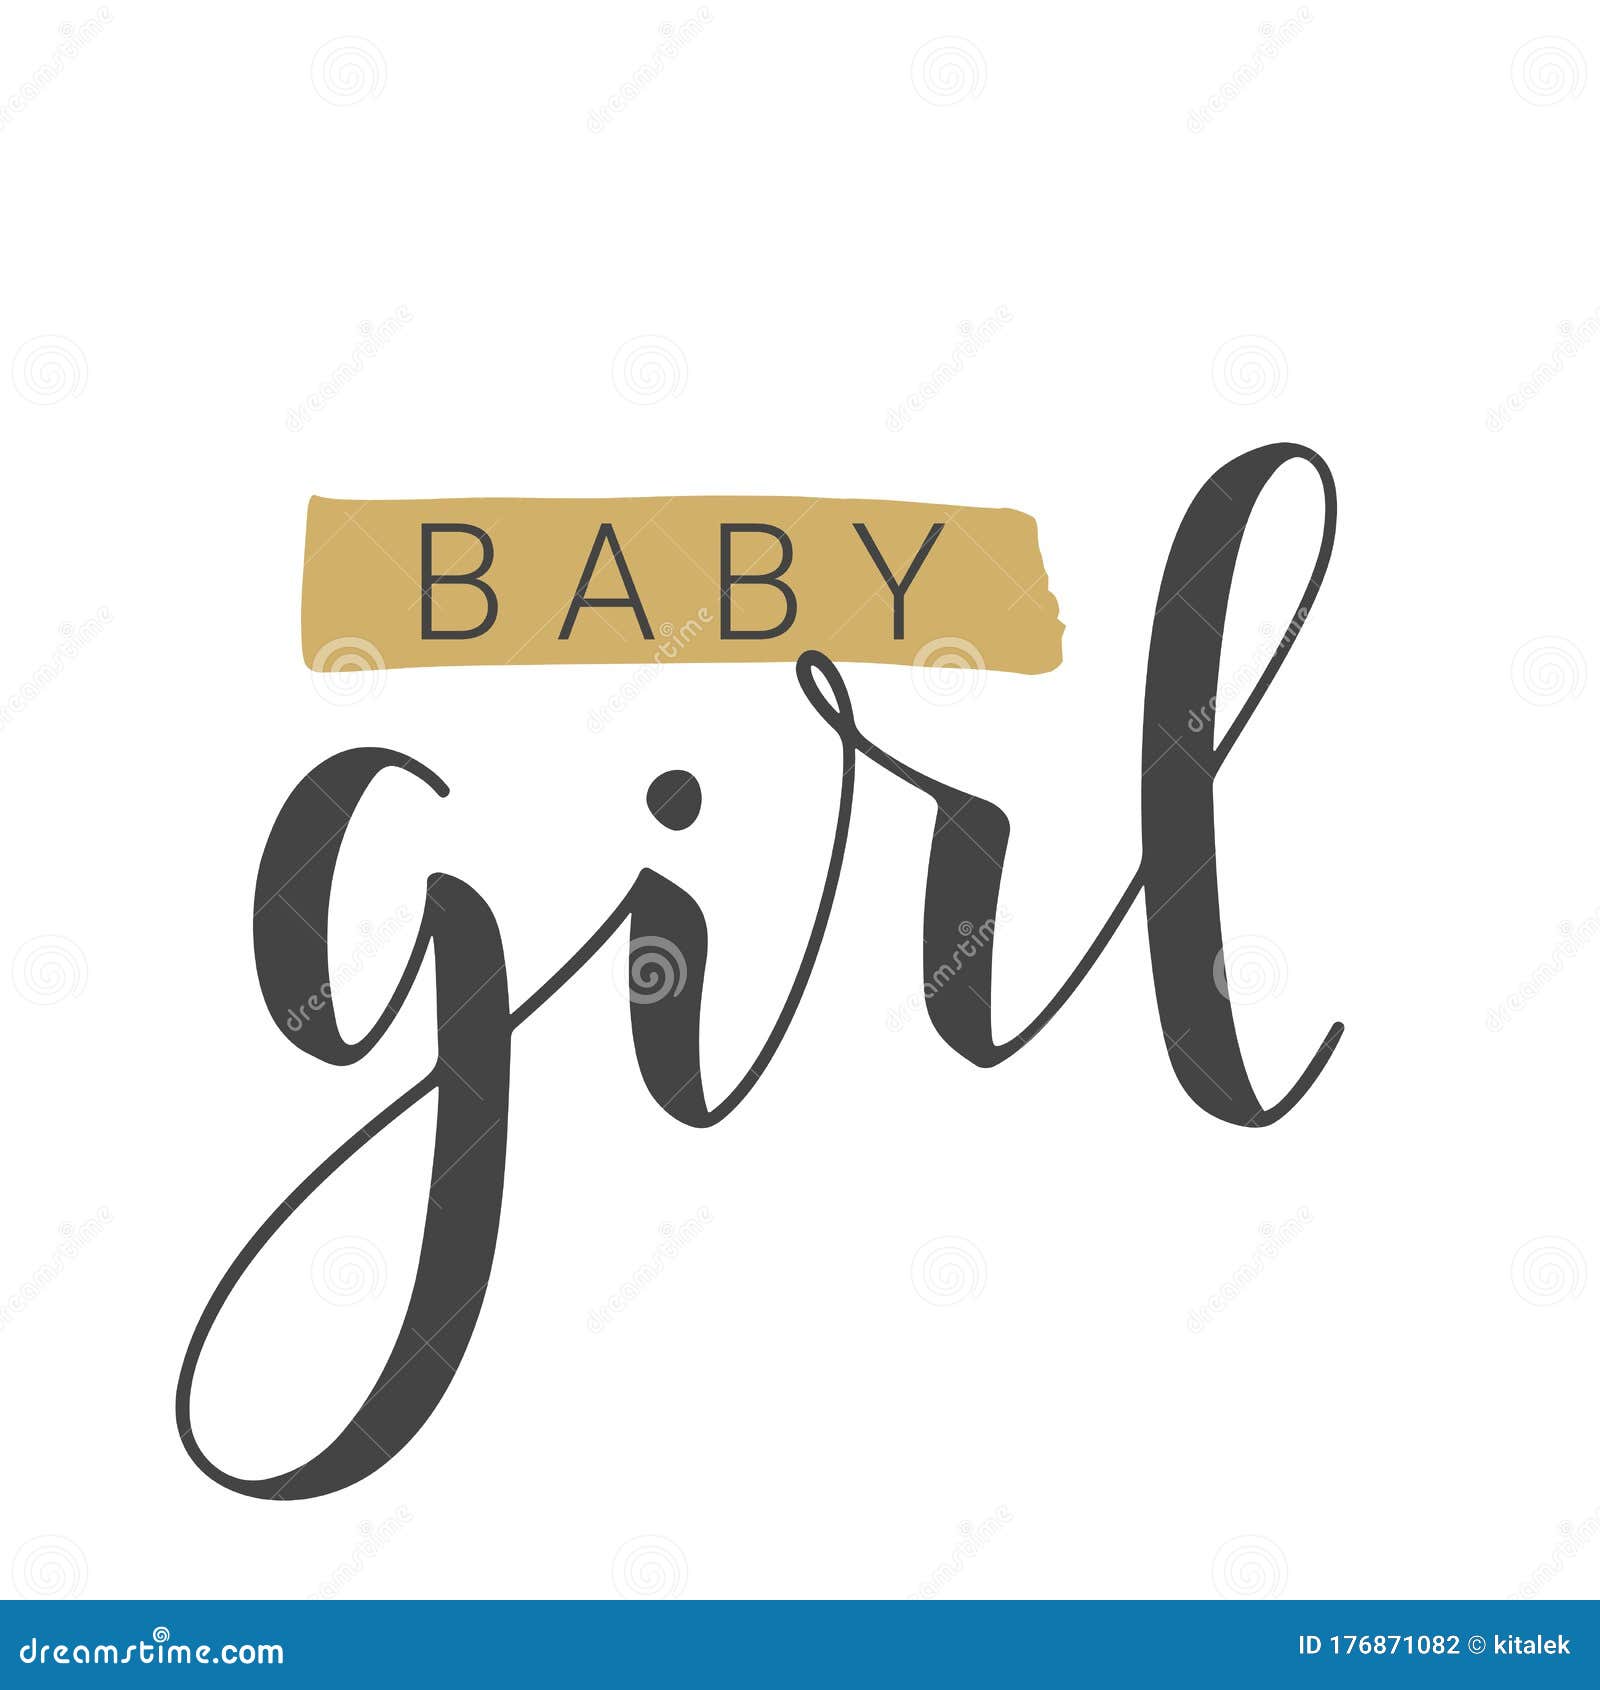 Handwritten Lettering of Baby Girl on White Background. Vector ...